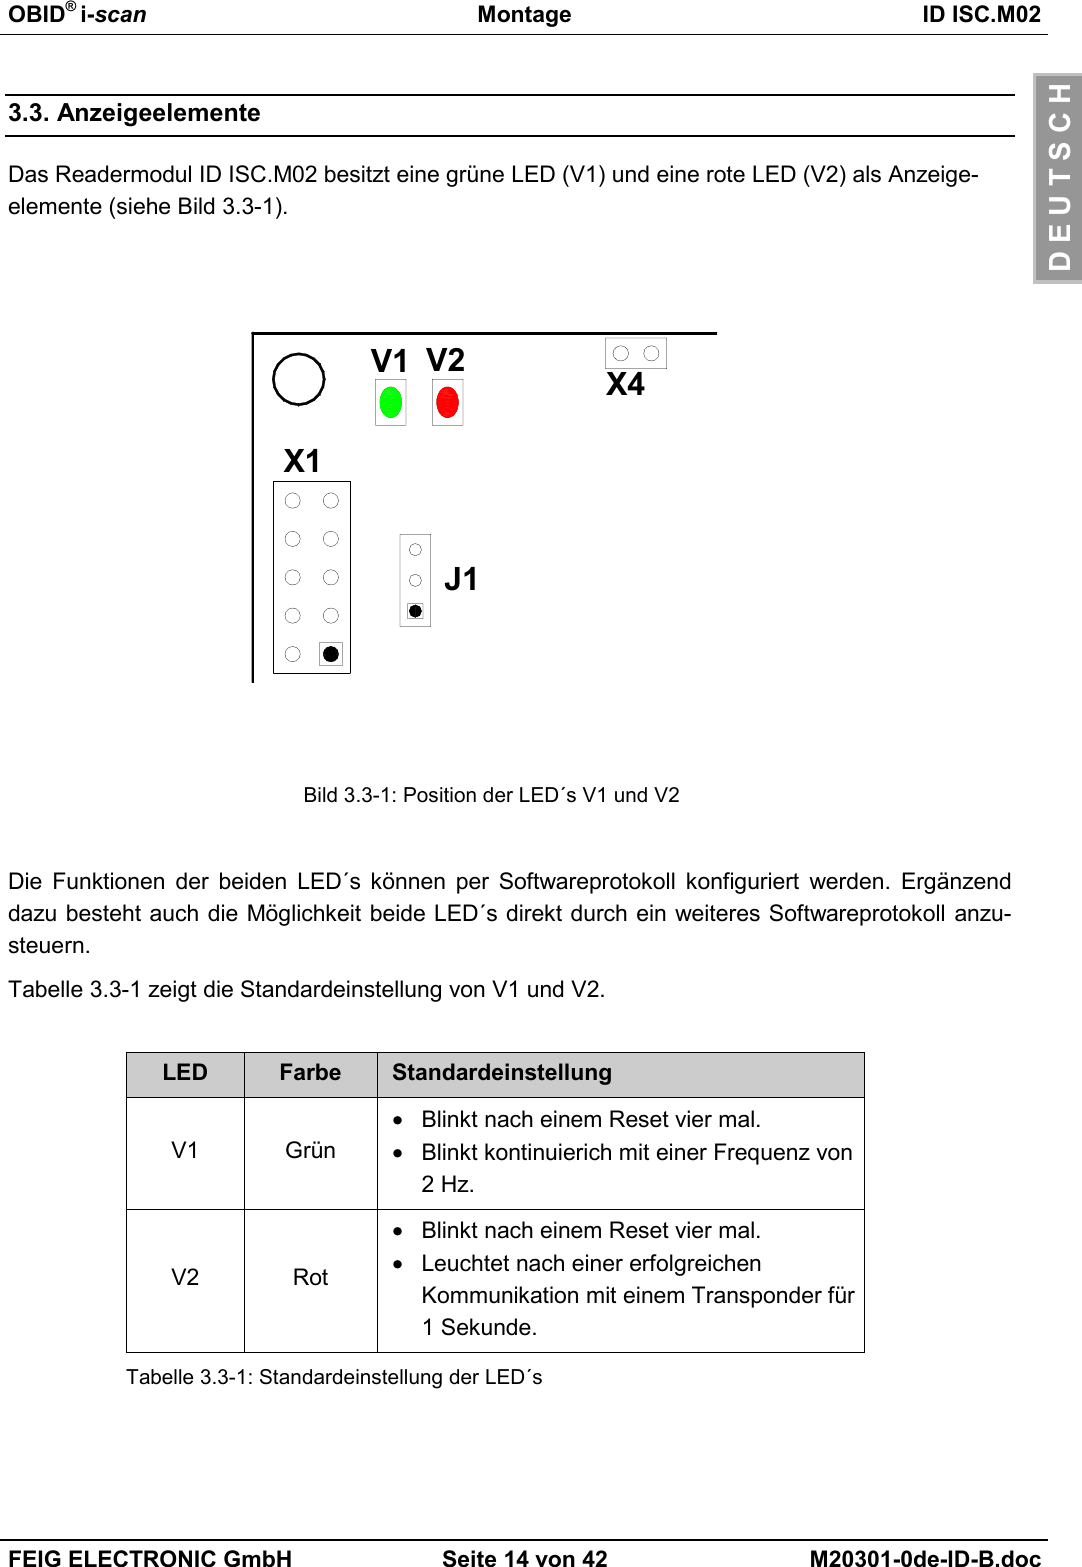 OBID® i-scan Montage ID ISC.M02FEIG ELECTRONIC GmbH Seite 14 von 42 M20301-0de-ID-B.docD E U T S C H3.3. AnzeigeelementeDas Readermodul ID ISC.M02 besitzt eine grüne LED (V1) und eine rote LED (V2) als Anzeige-elemente (siehe Bild 3.3-1).Bild 3.3-1: Position der LED´s V1 und V2Die Funktionen der beiden LED´s können per Softwareprotokoll konfiguriert werden. Ergänzenddazu besteht auch die Möglichkeit beide LED´s direkt durch ein weiteres Softwareprotokoll anzu-steuern.Tabelle 3.3-1 zeigt die Standardeinstellung von V1 und V2.LED Farbe StandardeinstellungV1 Grün•  Blinkt nach einem Reset vier mal.•  Blinkt kontinuierich mit einer Frequenz von2 Hz.V2 Rot•  Blinkt nach einem Reset vier mal.•  Leuchtet nach einer erfolgreichenKommunikation mit einem Transponder für1 Sekunde.Tabelle 3.3-1: Standardeinstellung der LED´sX1J1V2V1 X4